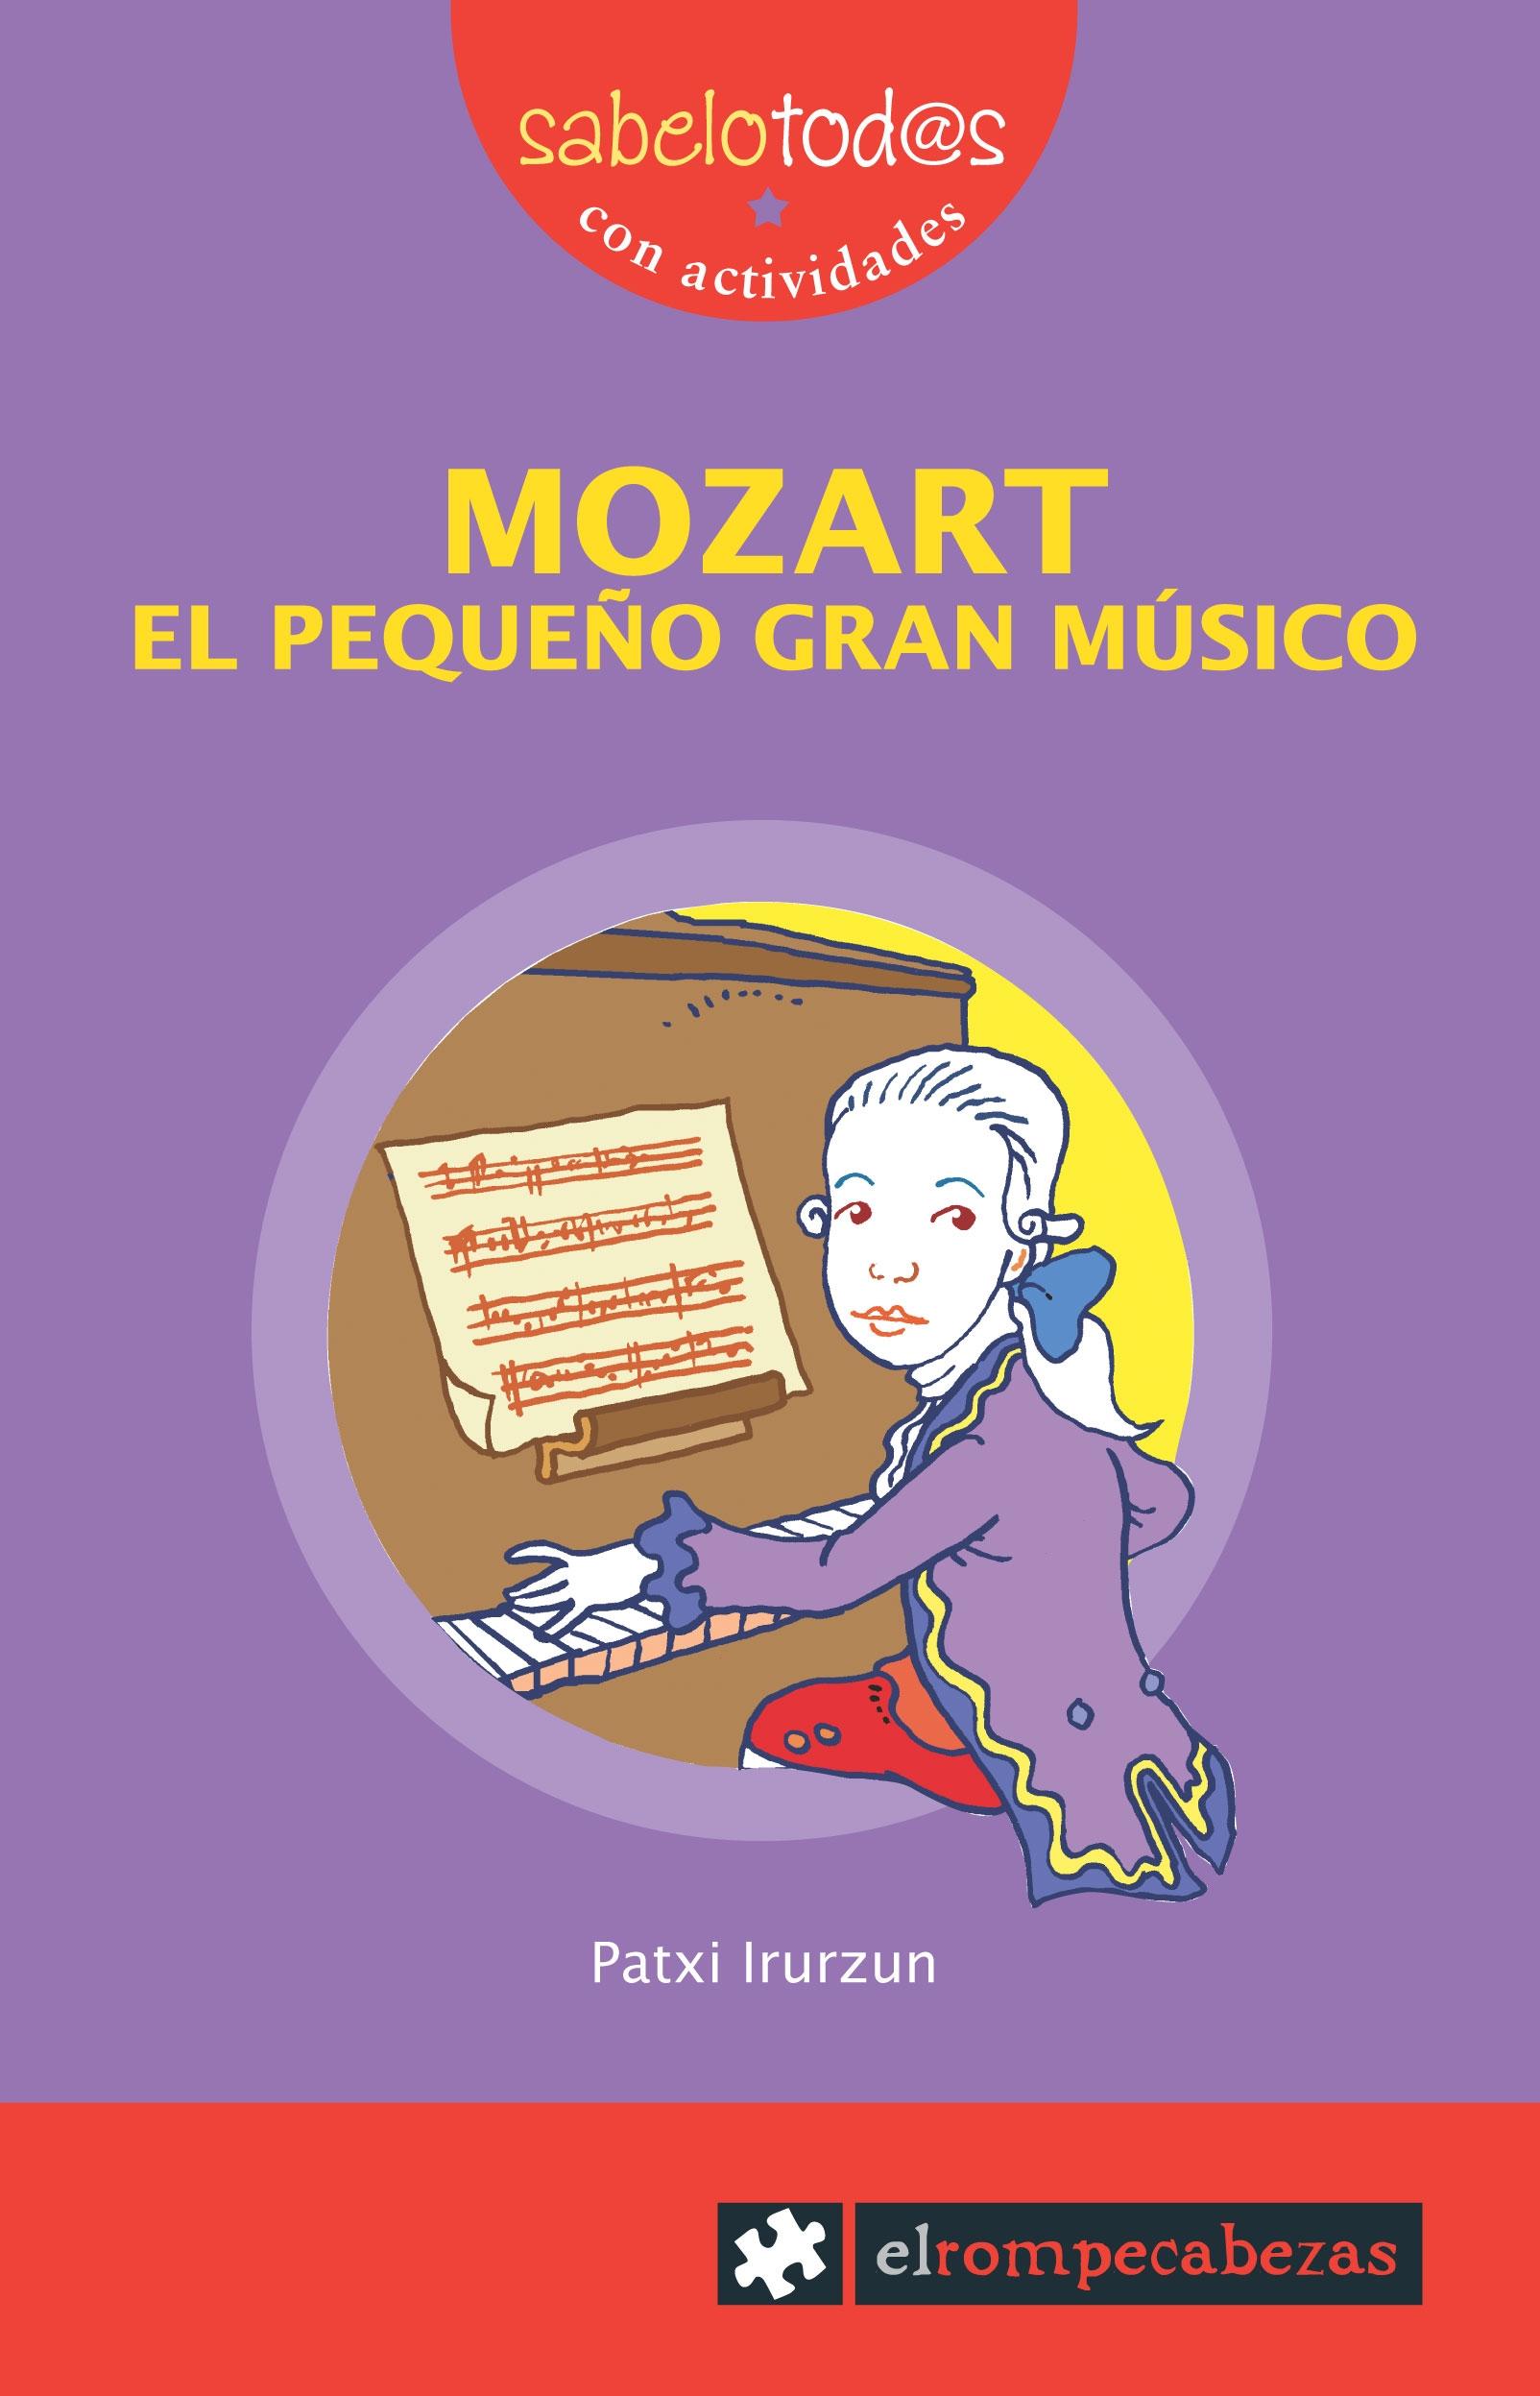 MOZART, EL PEQUEÑO GRAN MUSICO